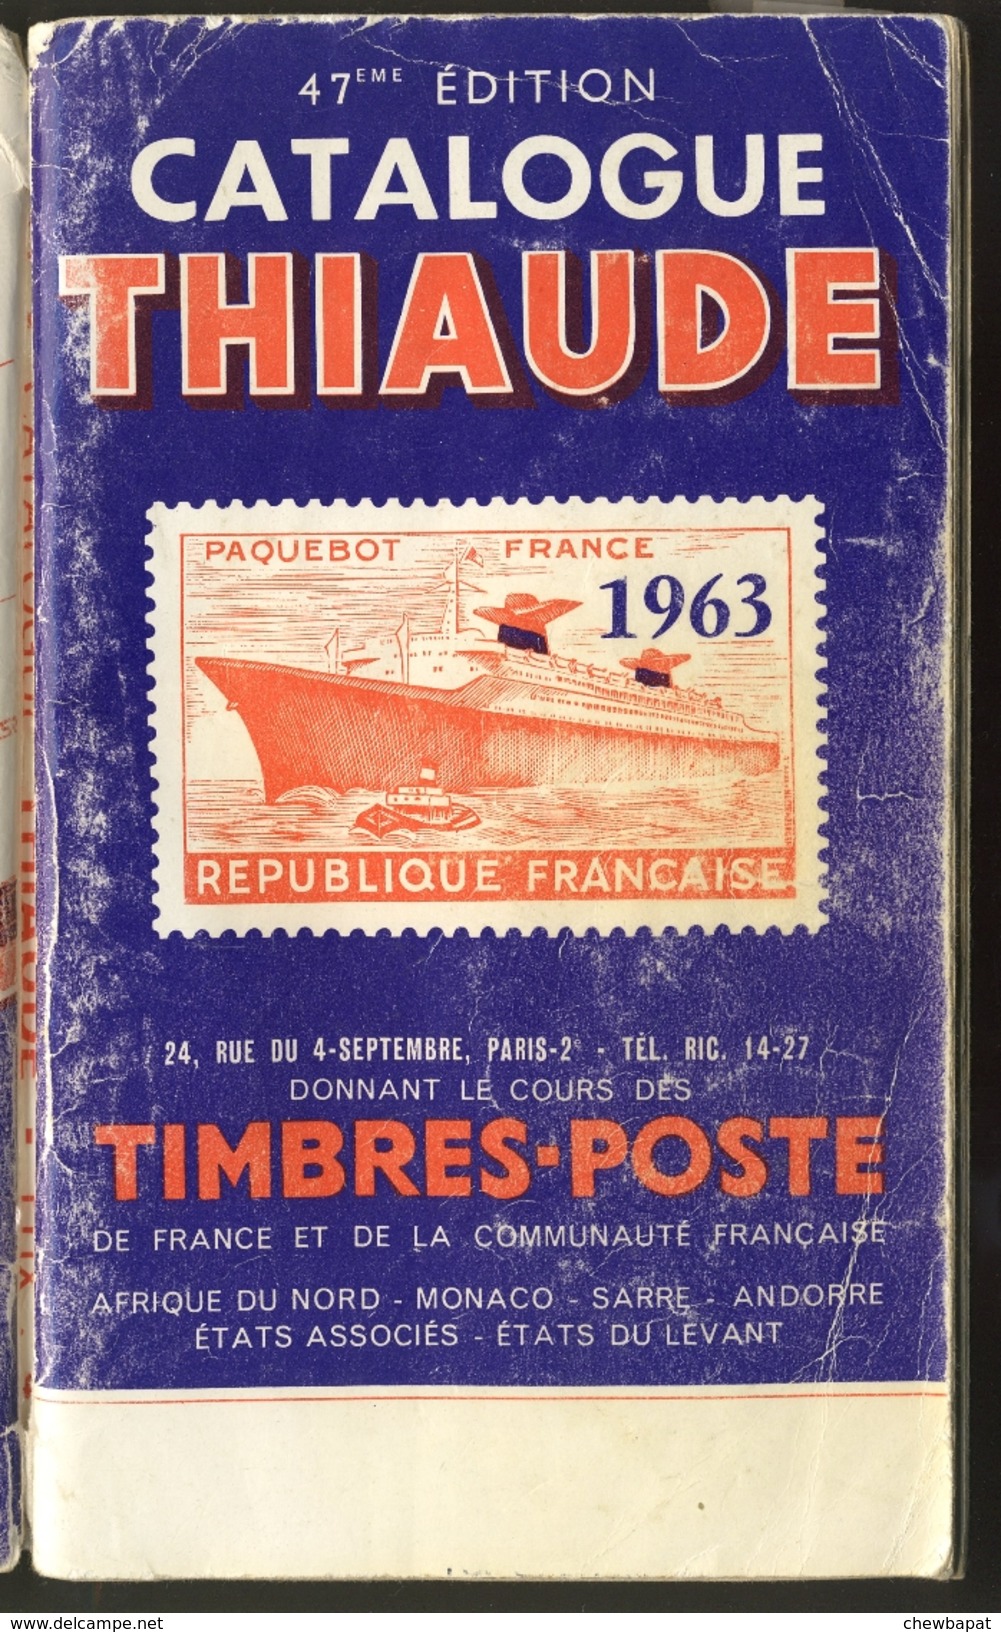 Catalogue Thiaude 1963 47ème édition - Frankreich